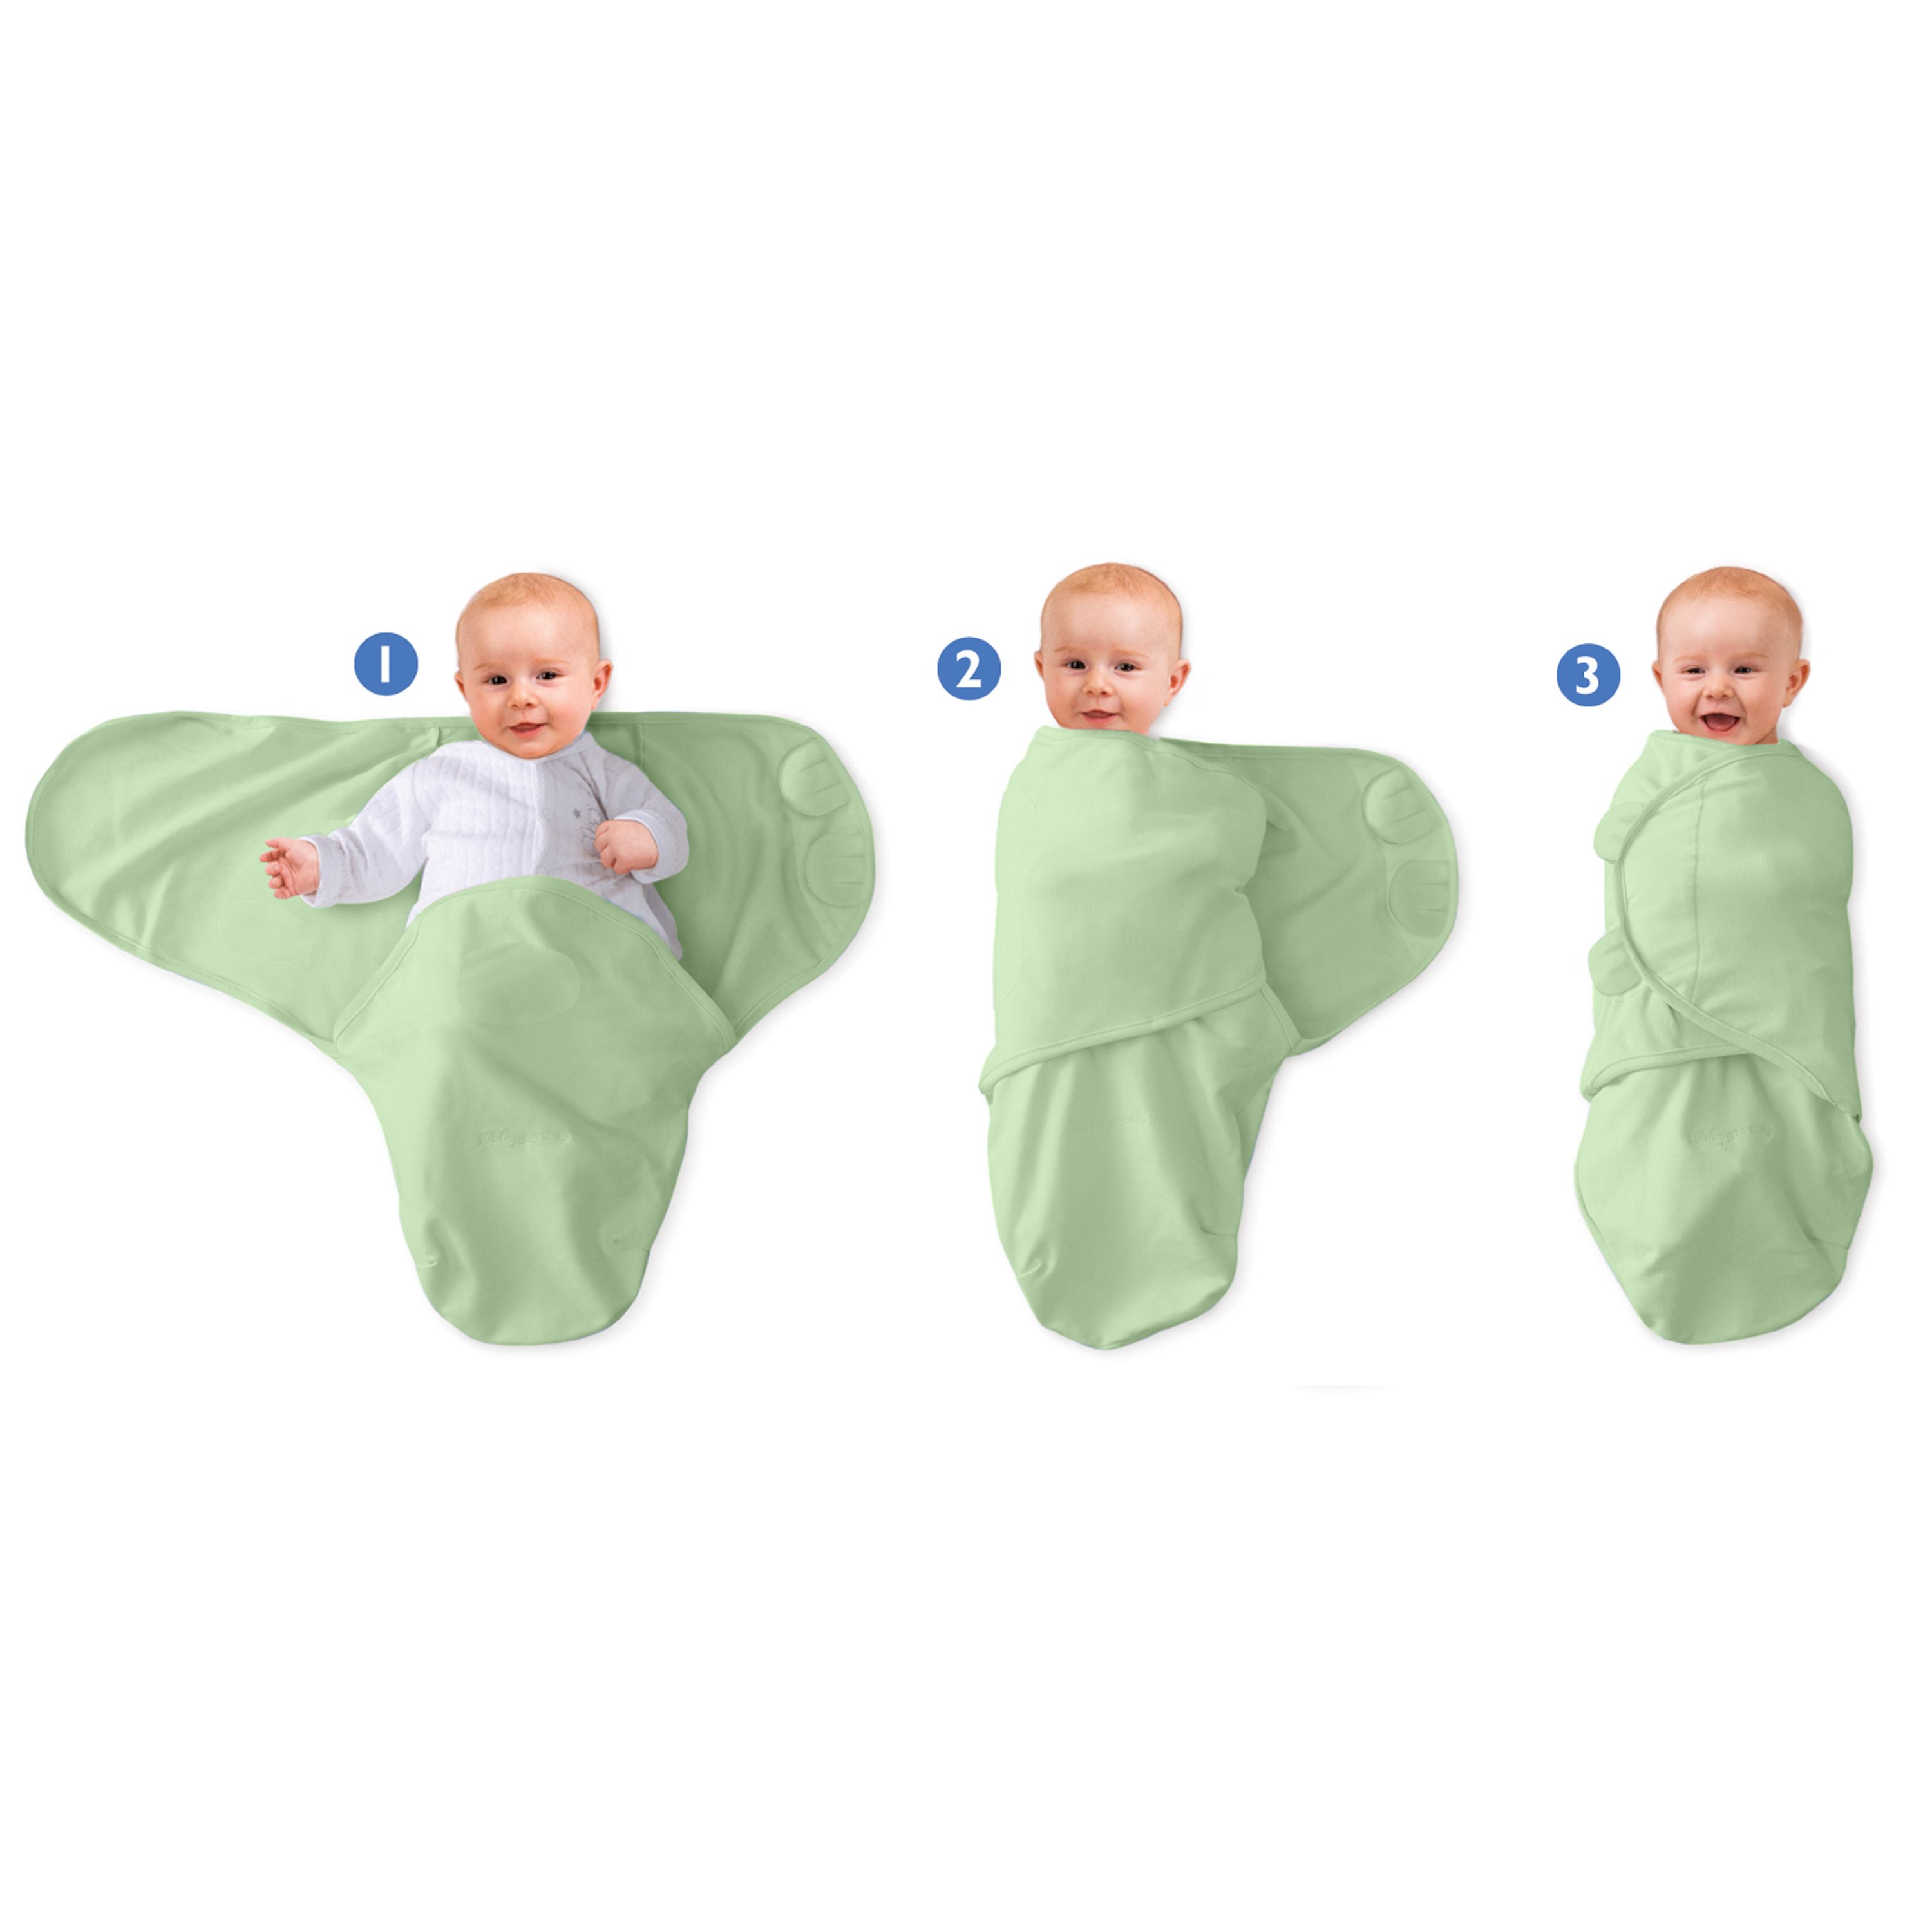 Размеры пелёнок для новорождённых: как правильно выбрать, таблицы